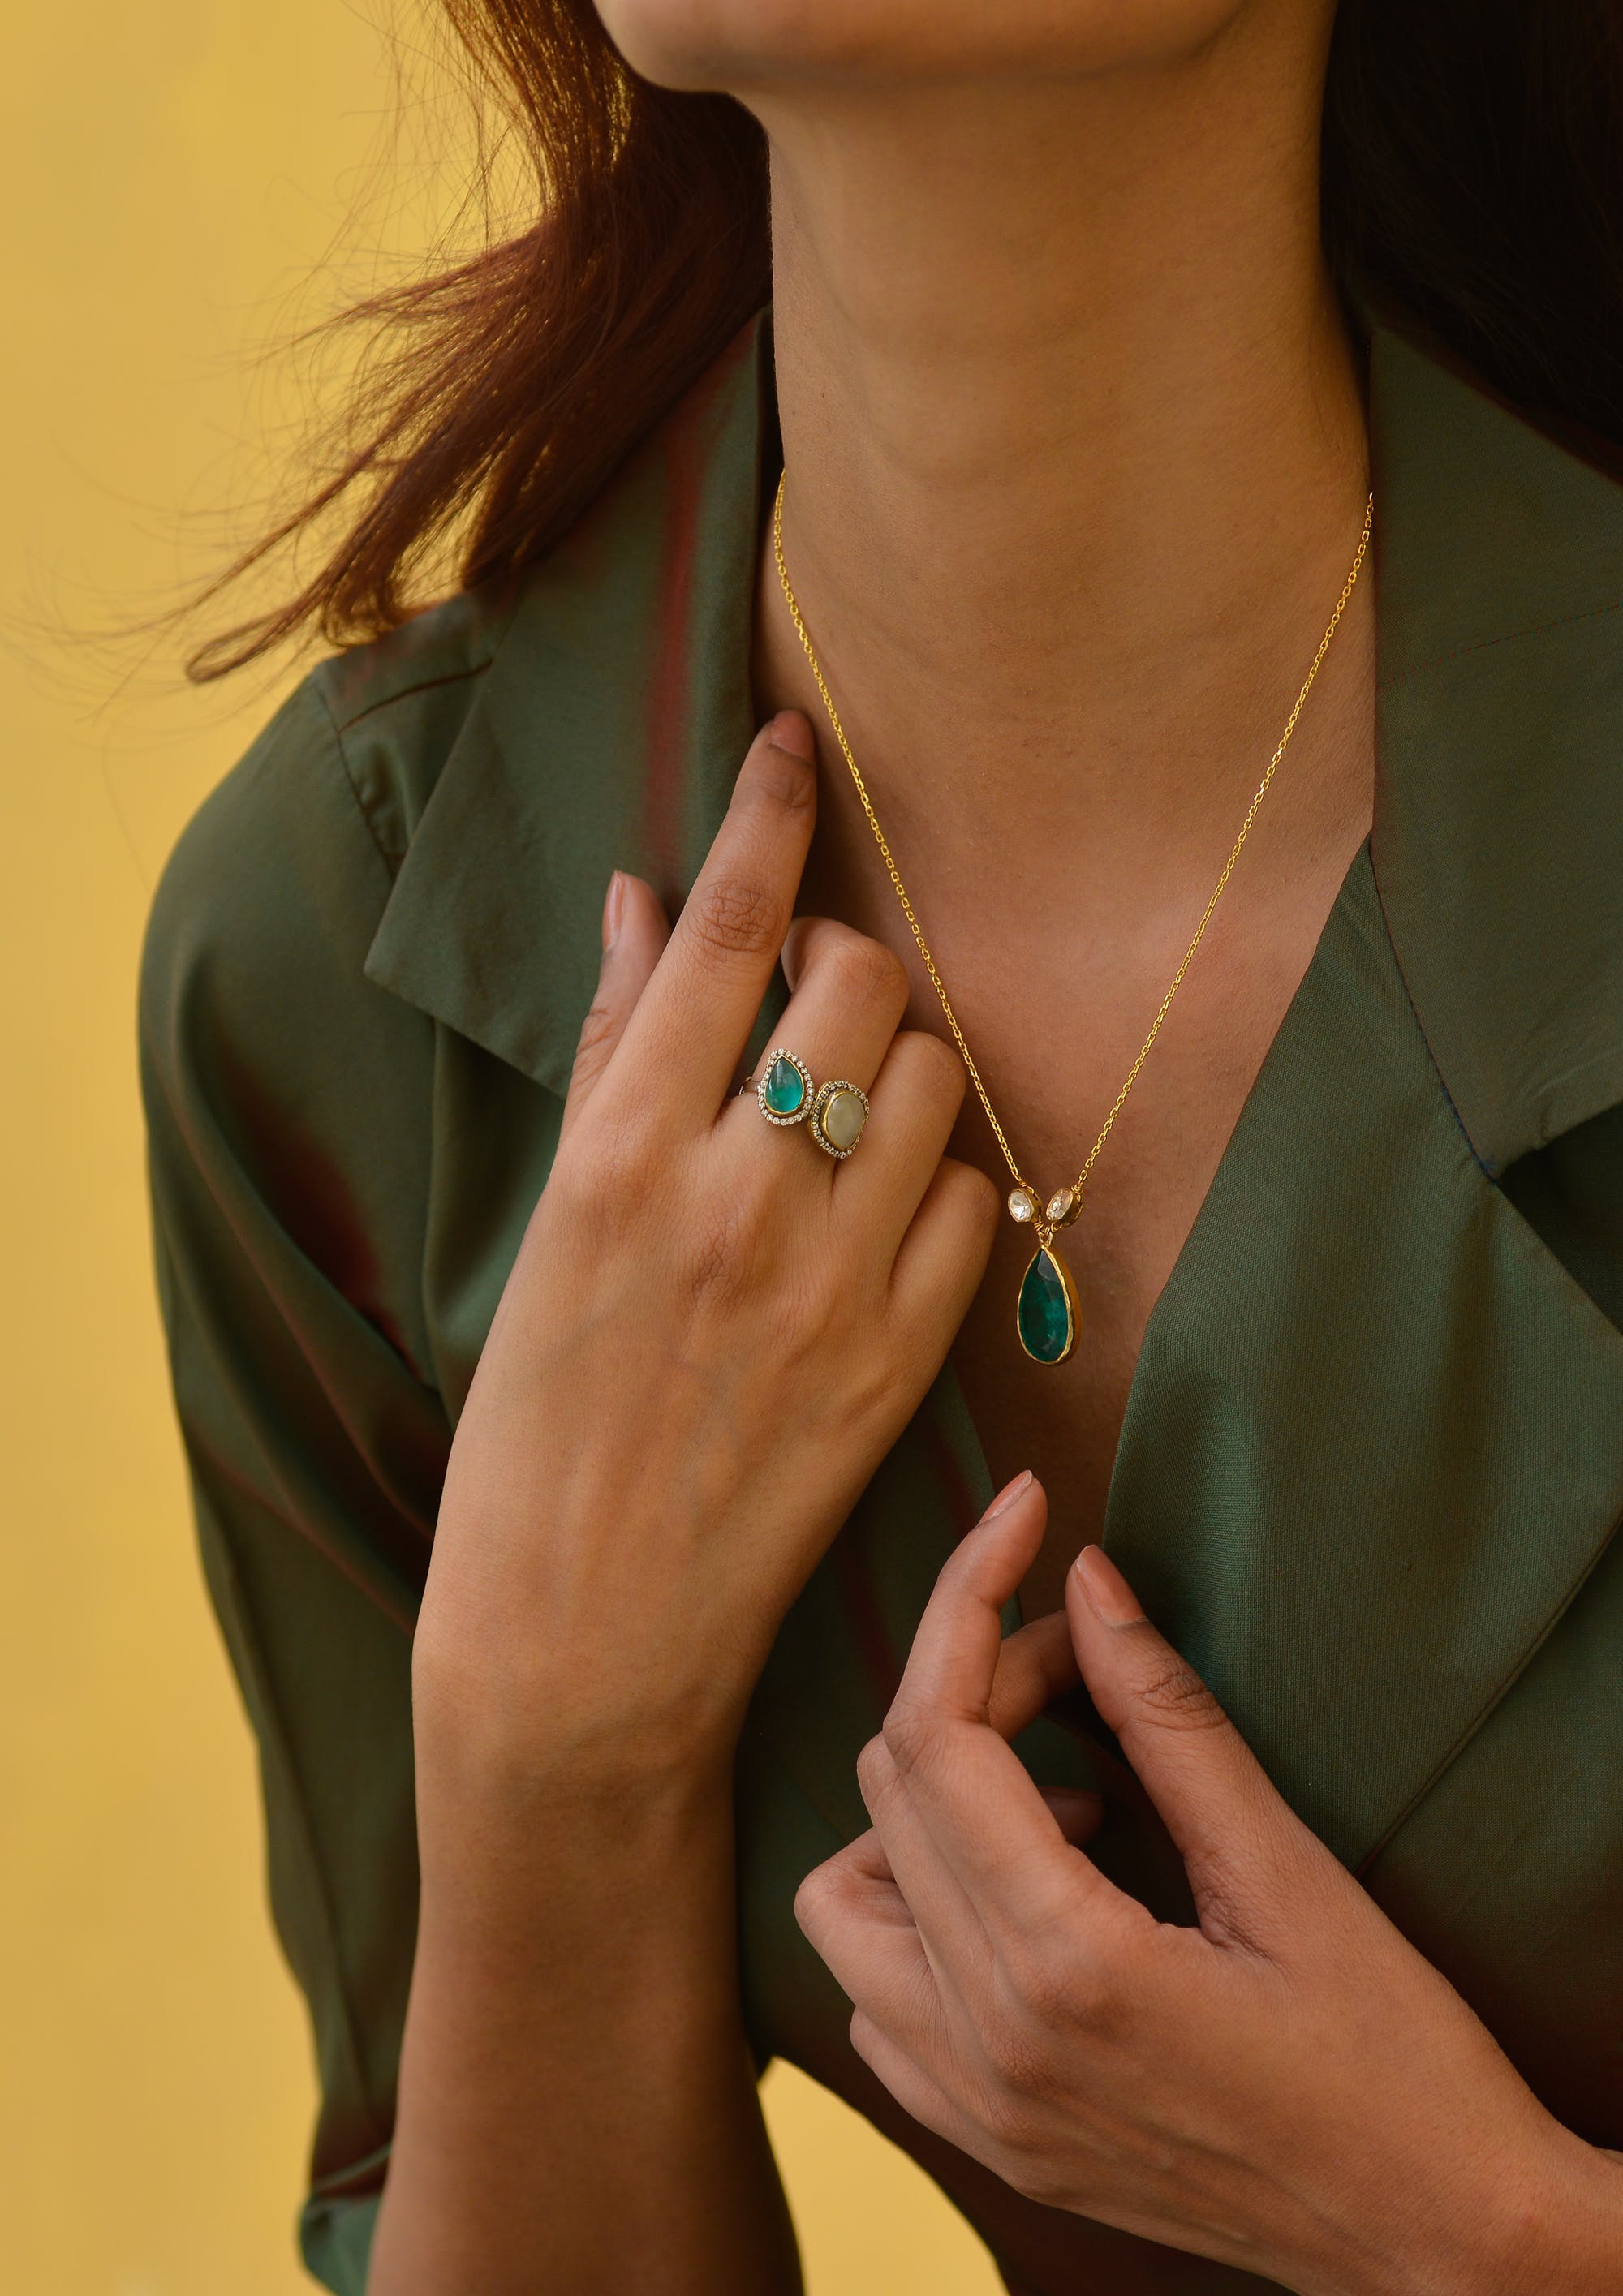 Eine Frau trägt einen Smaragd-Anhänger und einen Ring | Quelle: Pexels